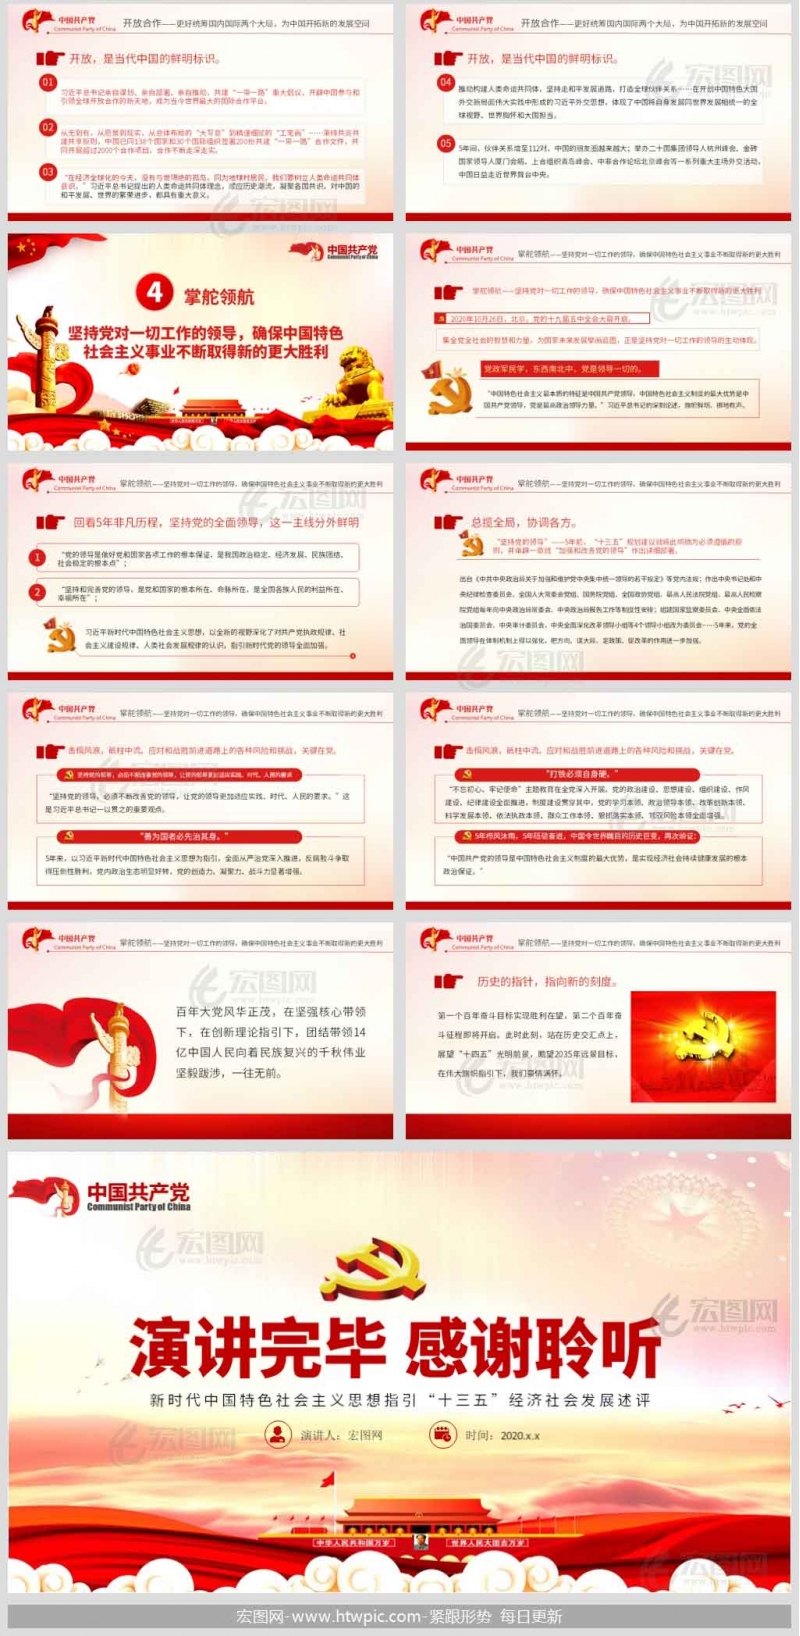 新时代中国特色社会主义思想指引“十三五”经济社会发展述评党课讲稿PPT